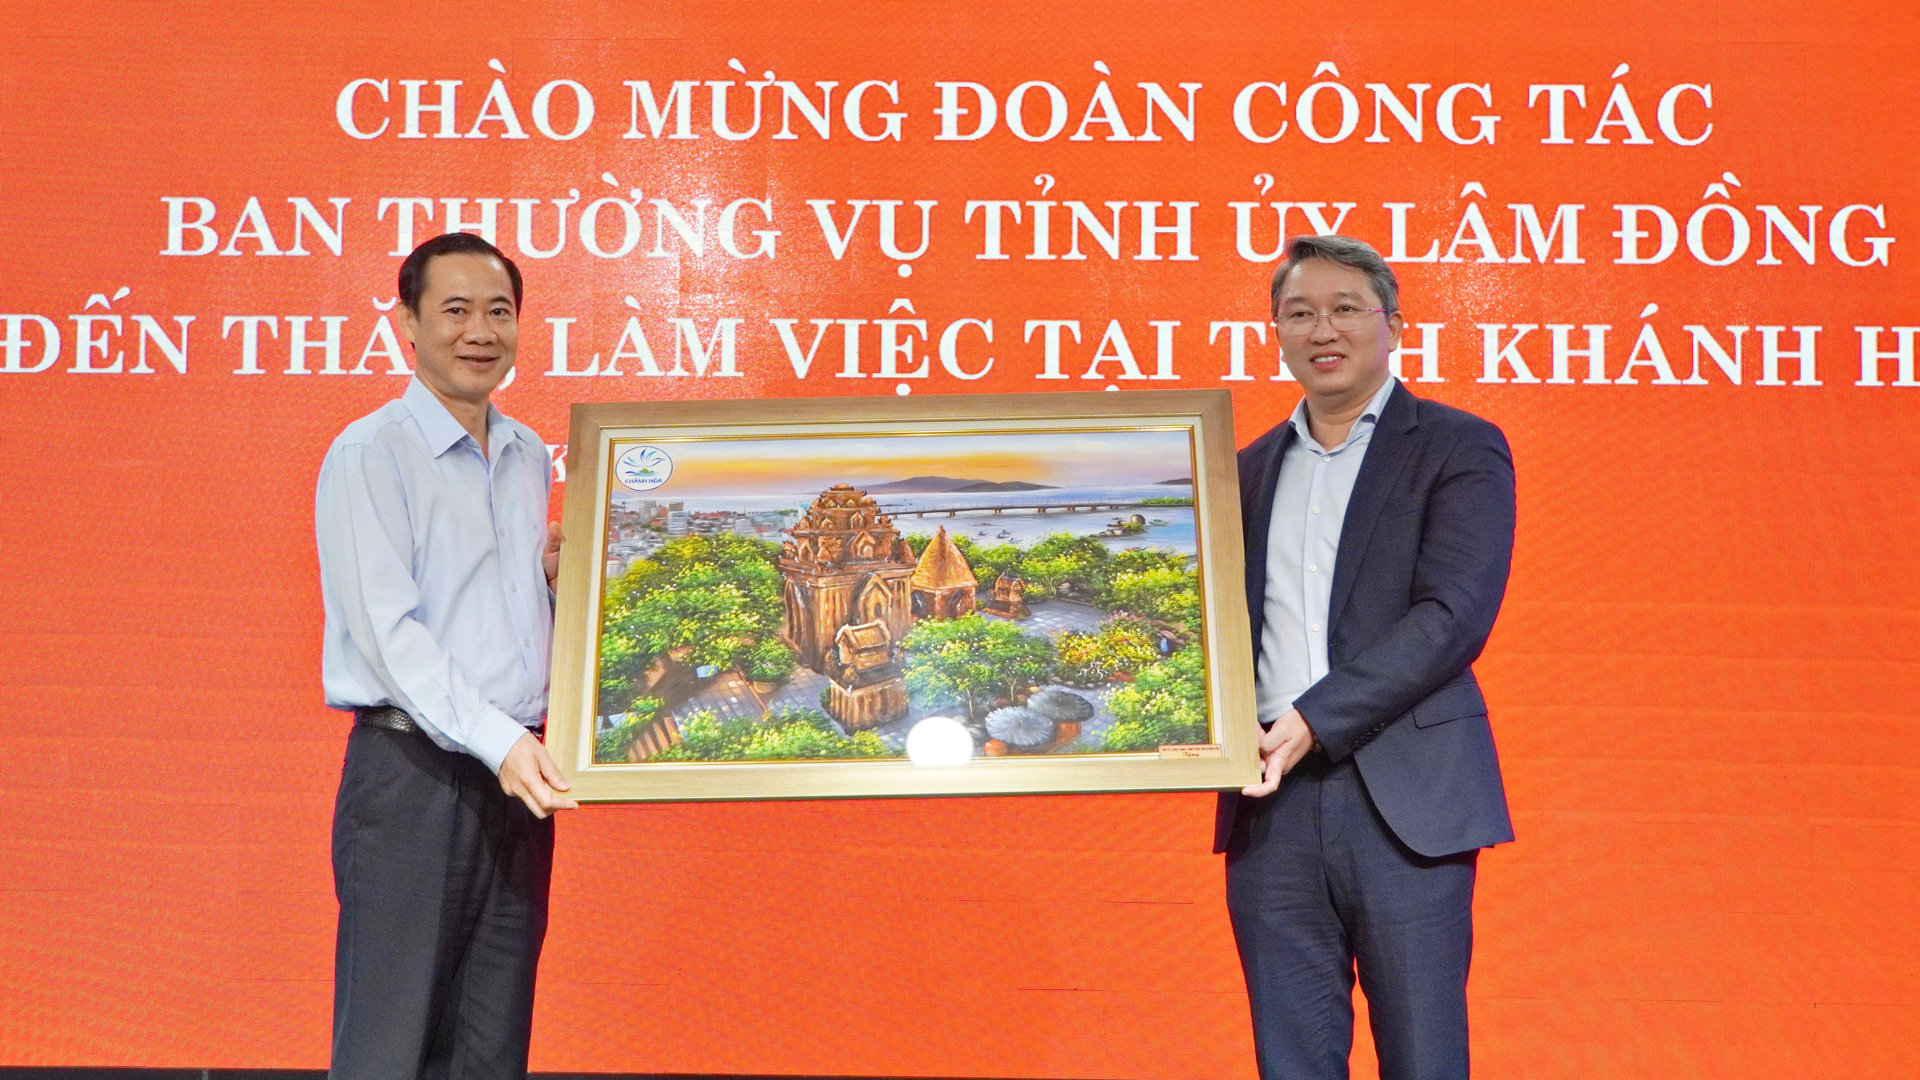 Đồng chí Nguyễn Hải Ninh, Bí thư Tỉnh uỷ Khánh Hoà tặng quà lưu niệm cho Ban Thường vụ Tỉnh uỷ Lâm Đồng